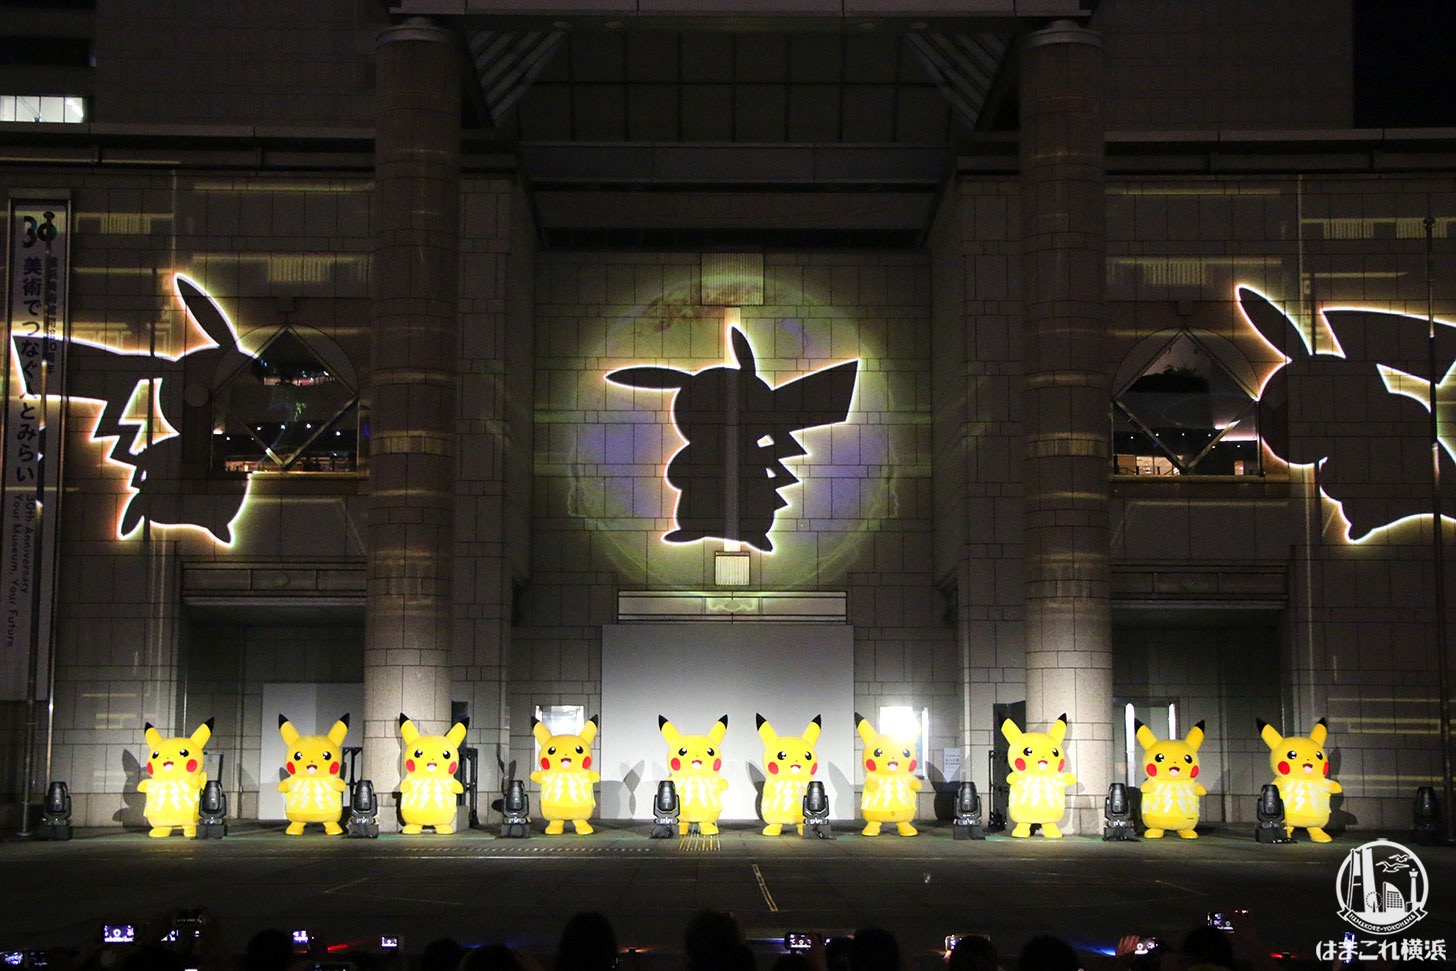 19年 ピカチュウが魅せるプロジェクションマッピングのダンスが最高に良かった はまこれ横浜